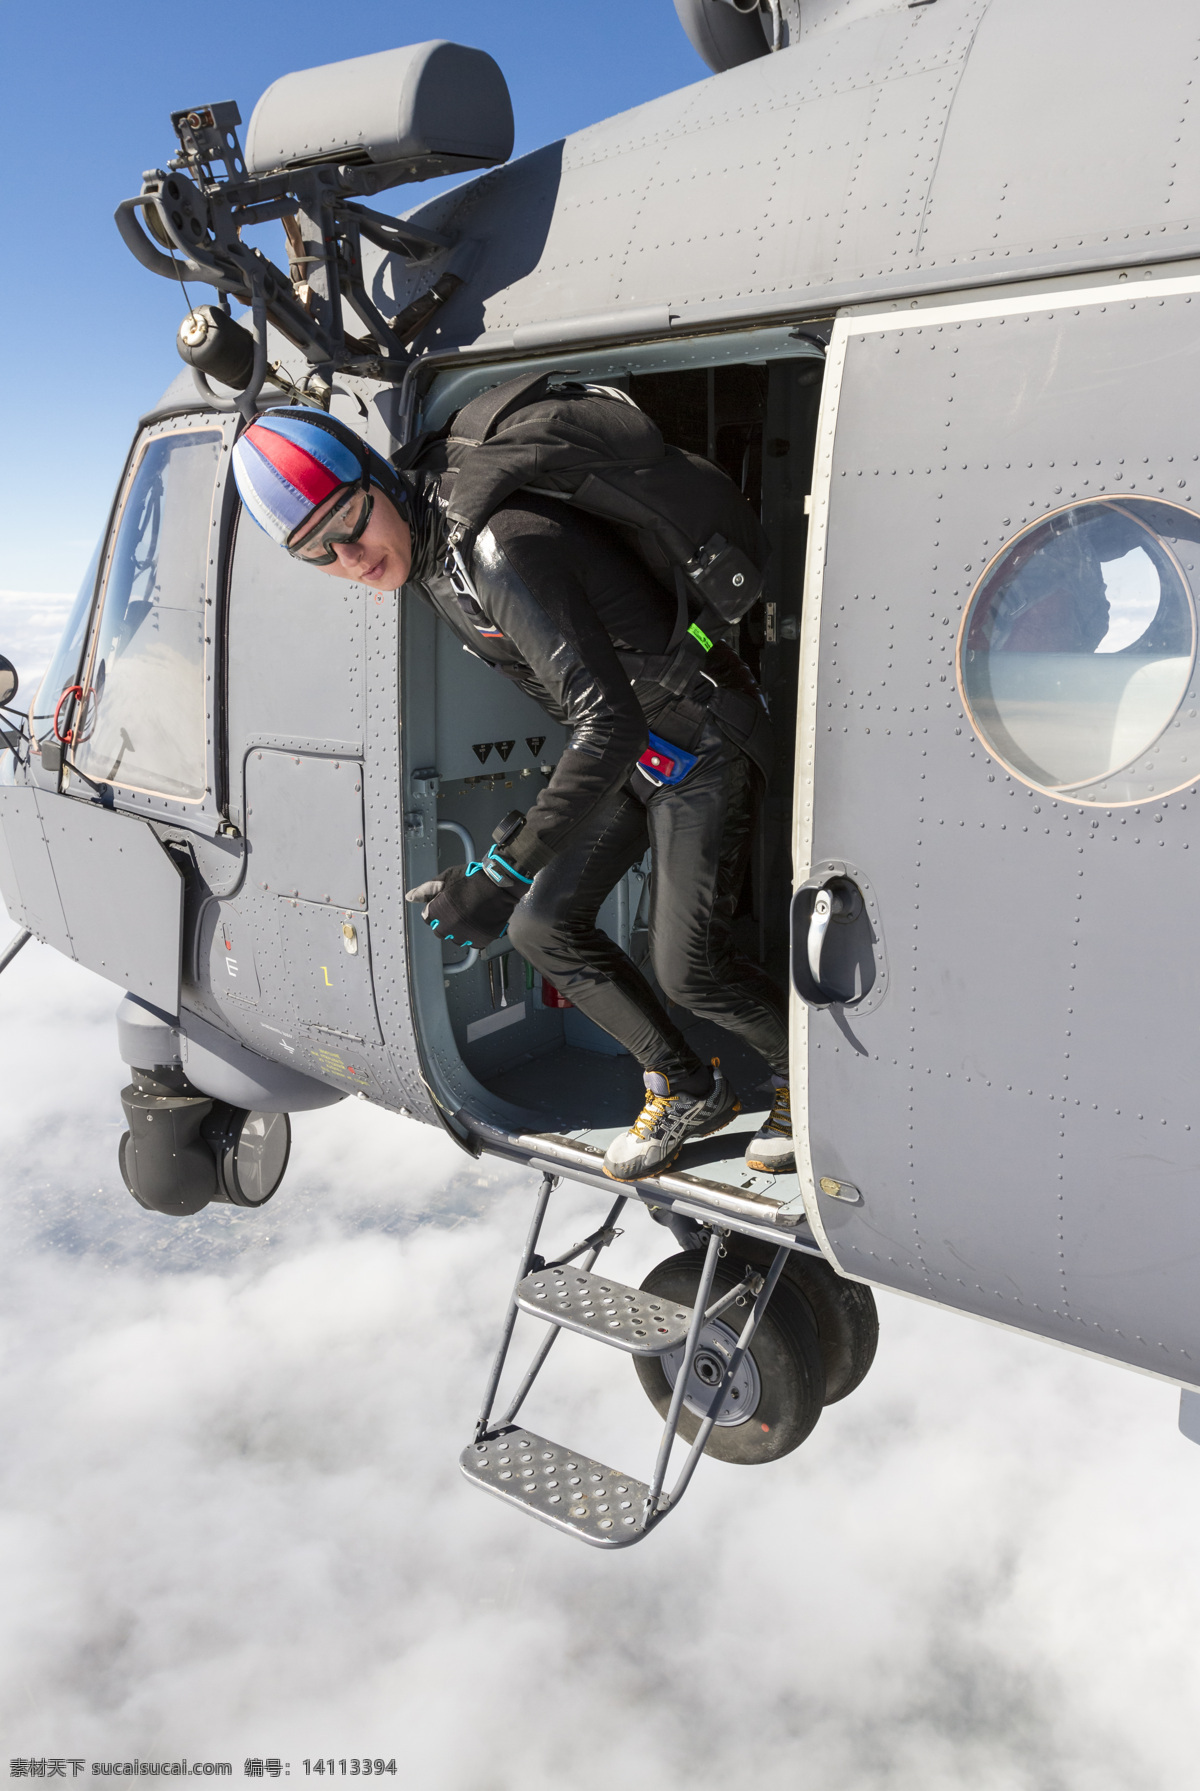 准备 跳伞 准备跳伞图片 空中 天空 运动 运动员 降落伞 体育运动 生活百科 灰色